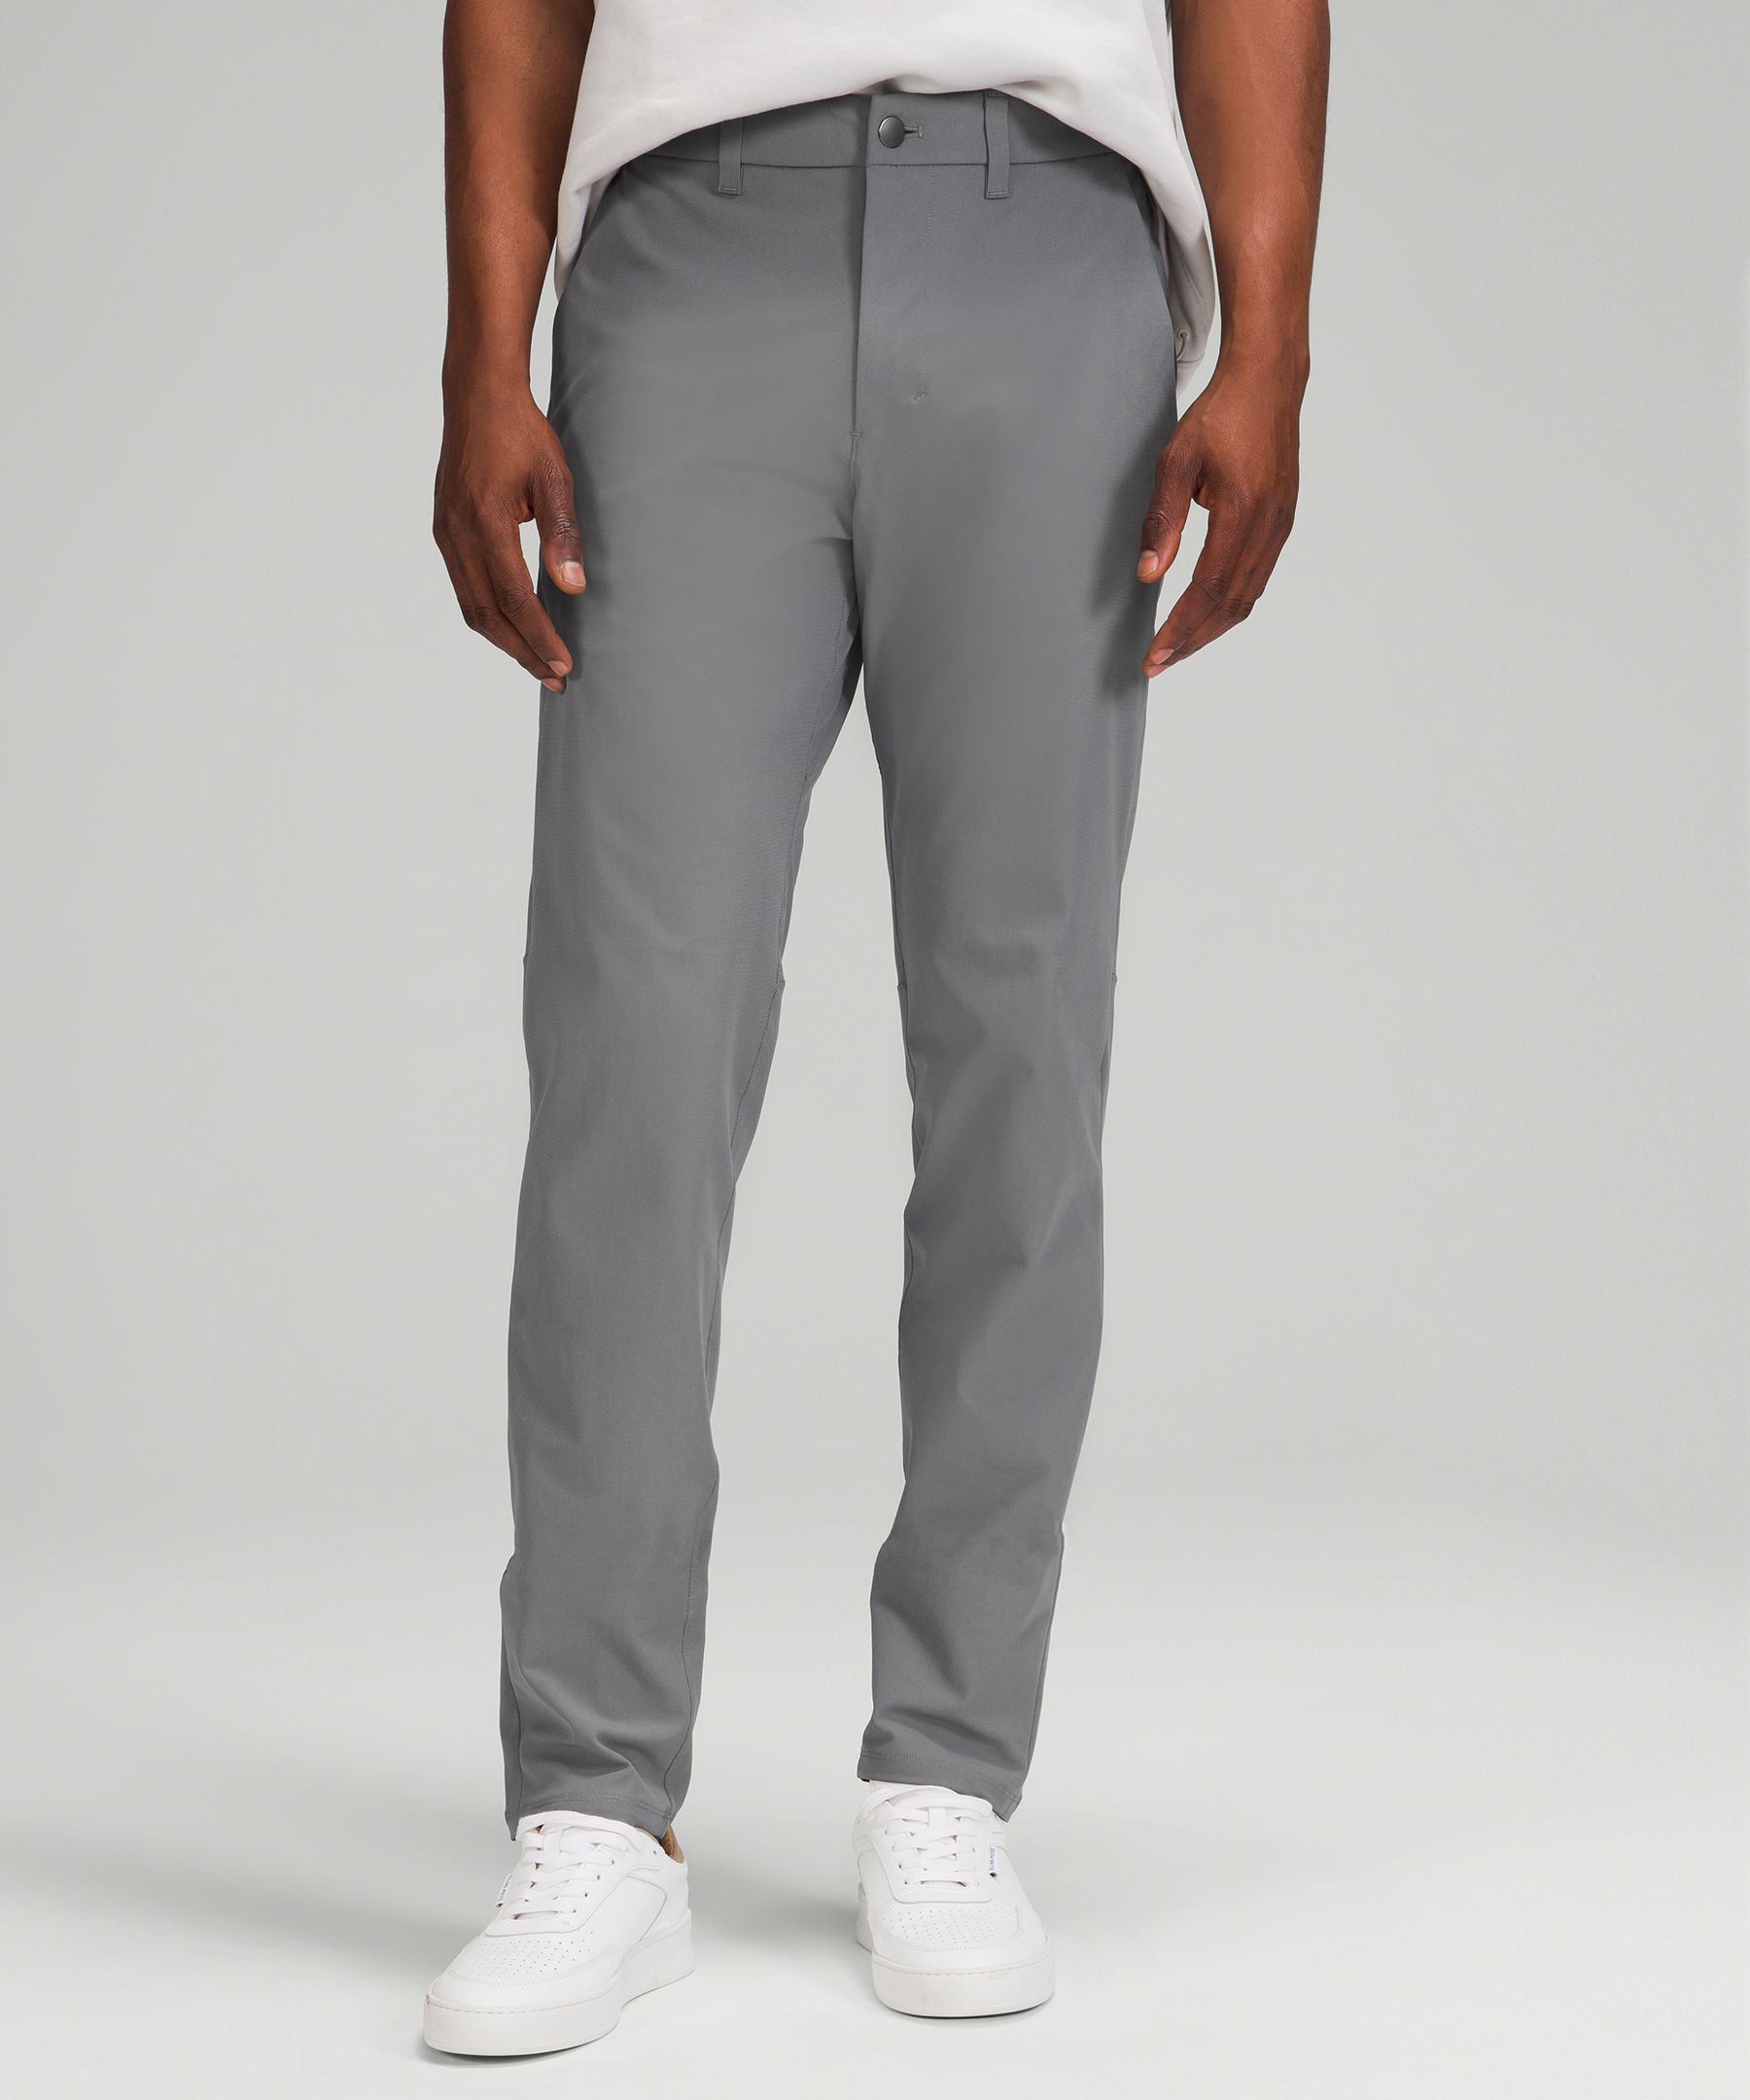 Lululemon Commission Slim-fit Pants 32" Warpstreme In Asphalt Grey